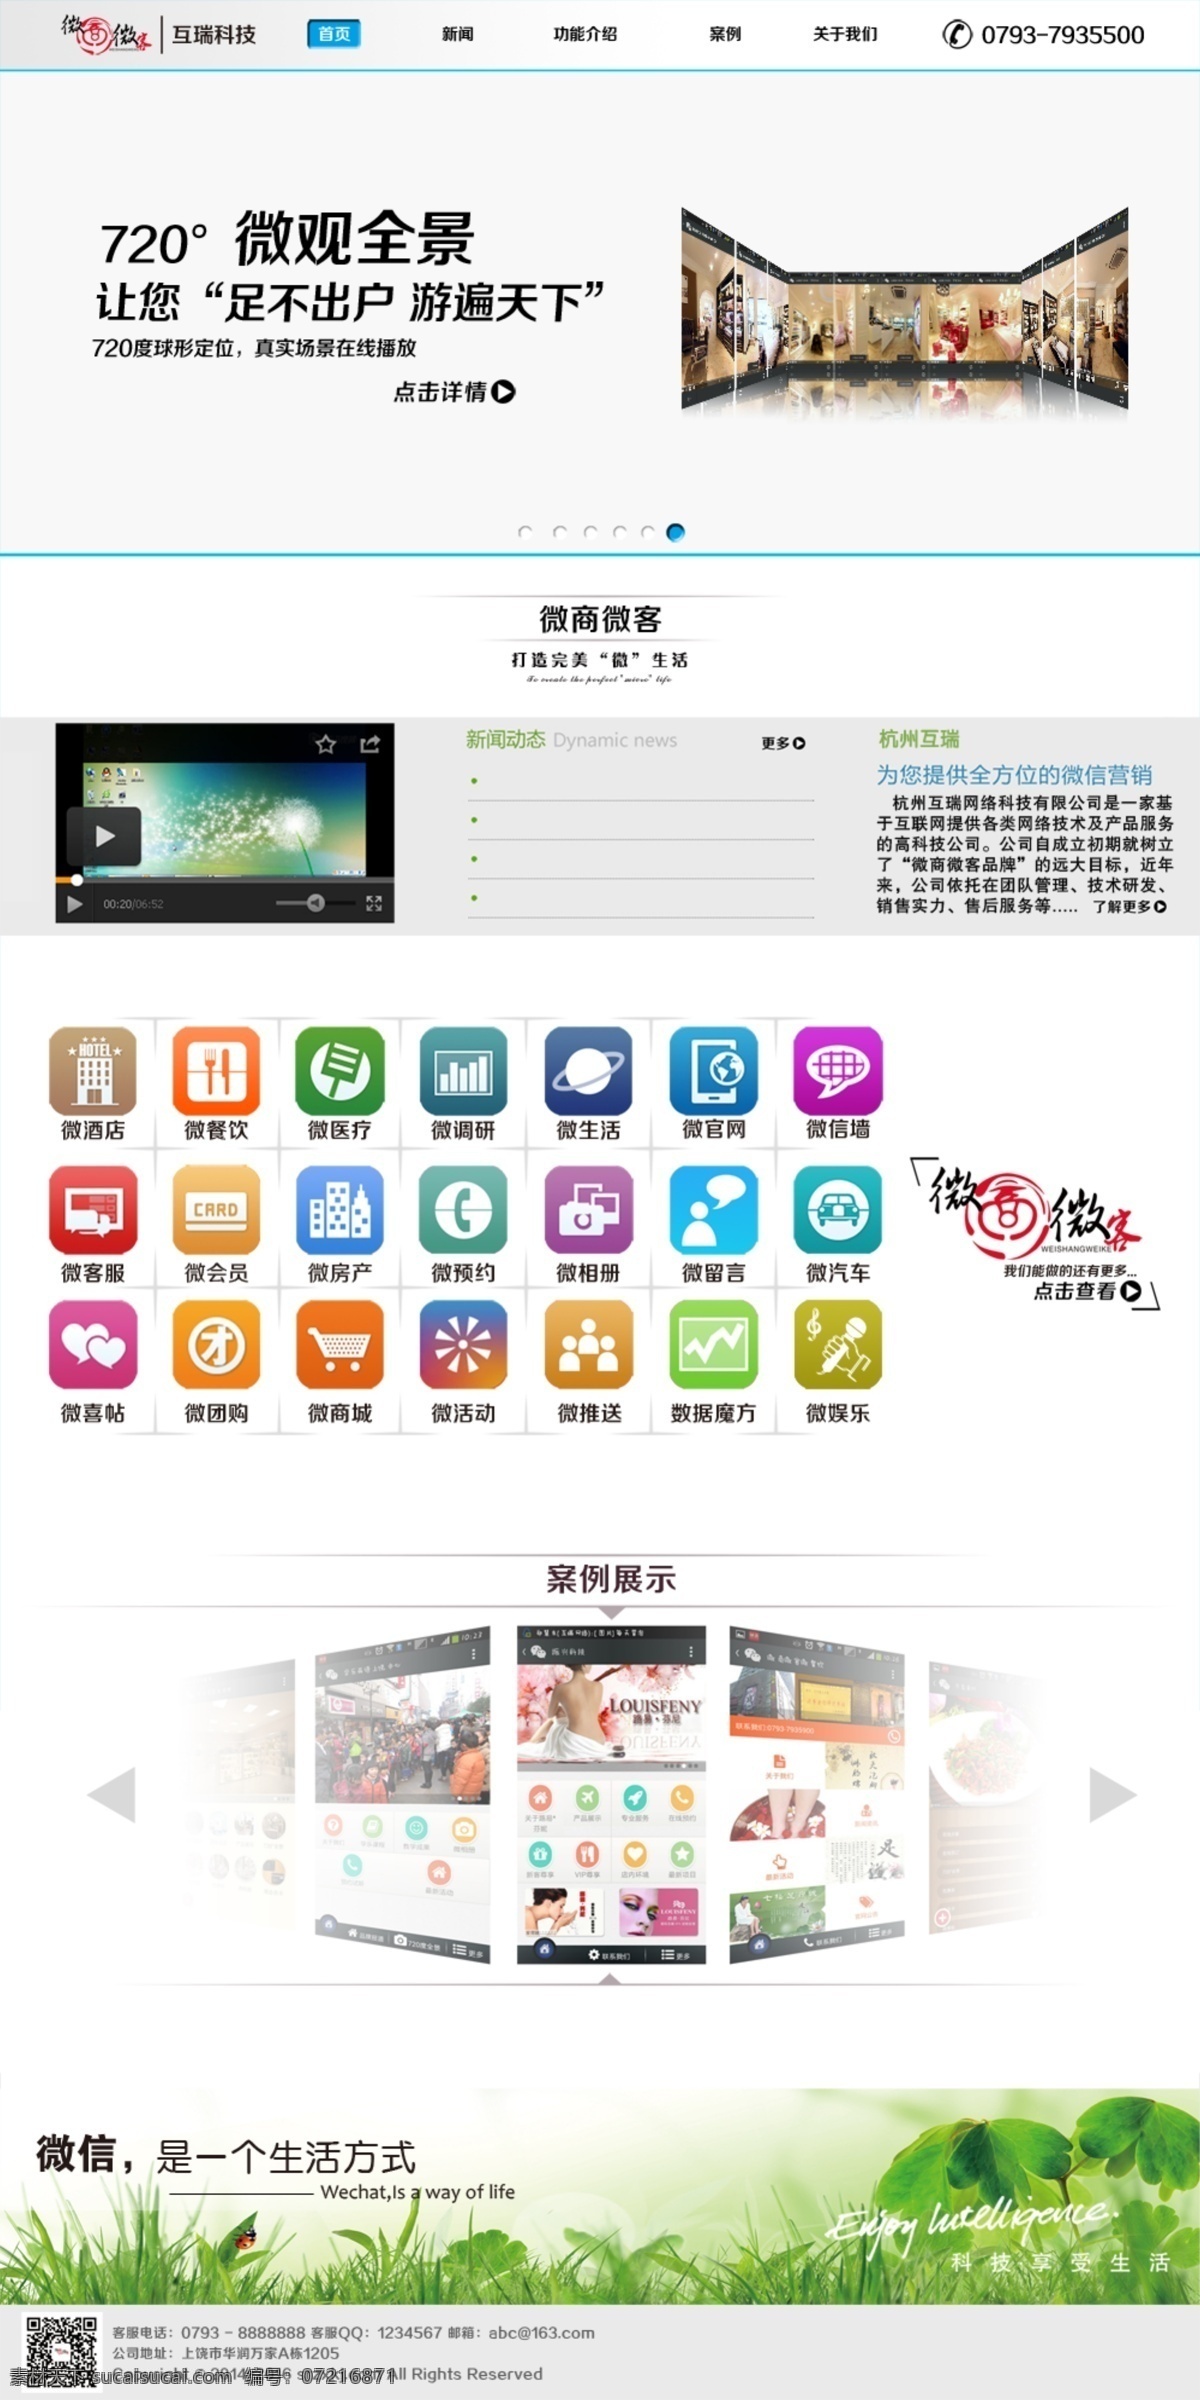 微信海报 微信 网站 微官网 微商城 图标 中文模板 网页模板 源文件